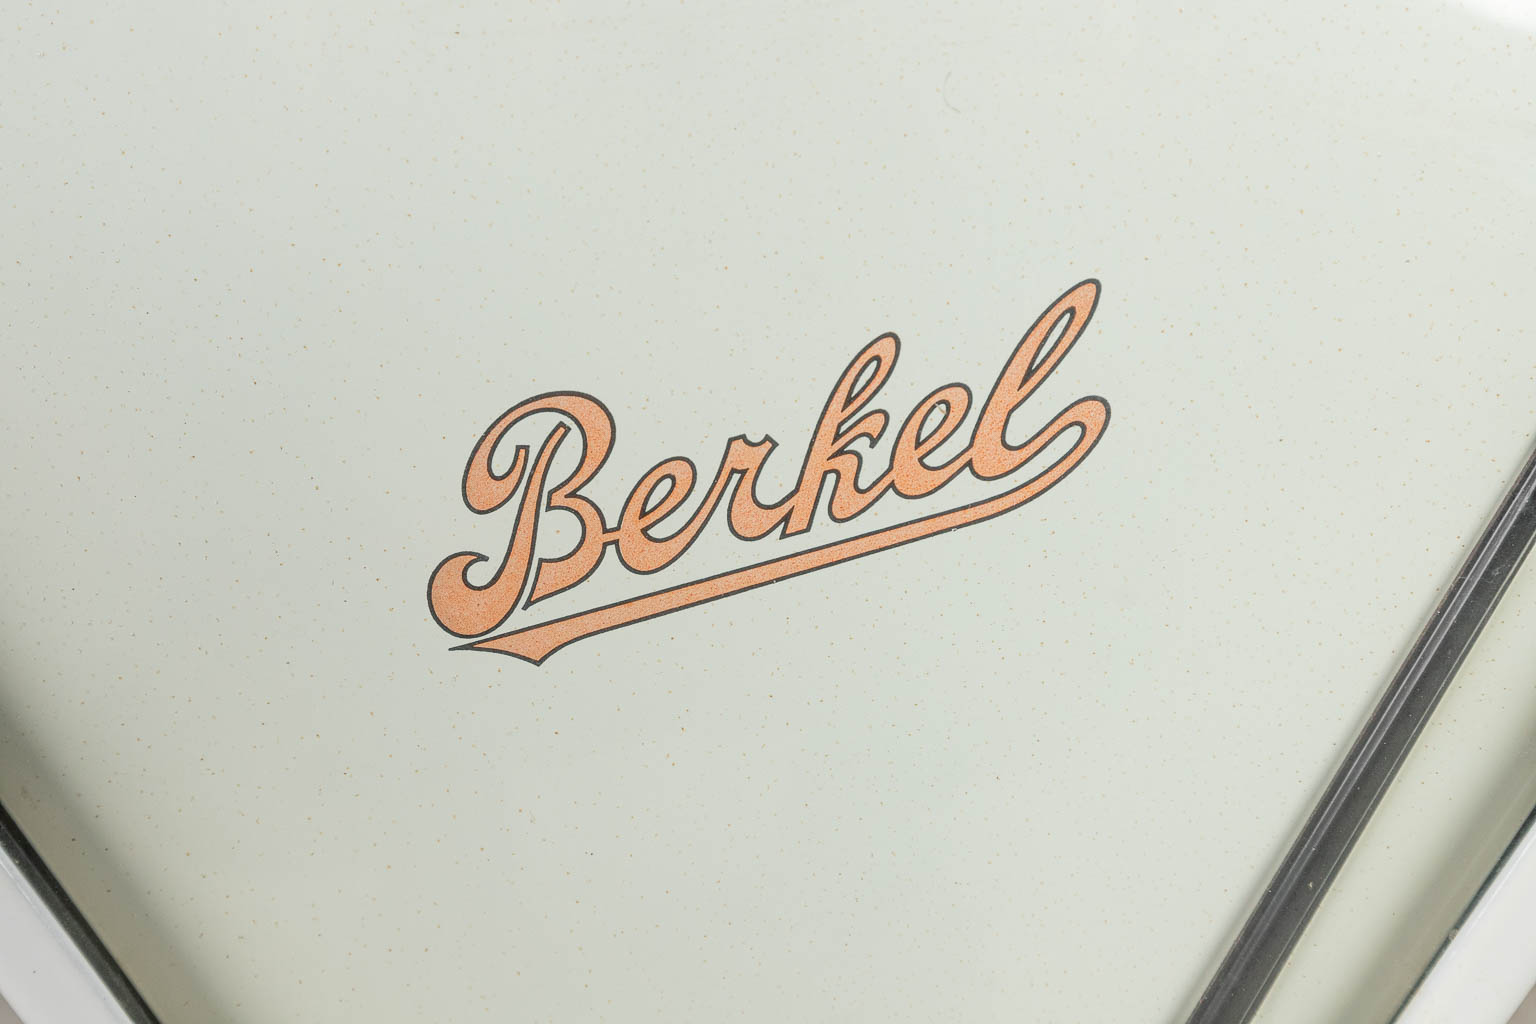 Een weegschaal met witte email en gewichten, gemaakt door Berkel. (H:68cm)